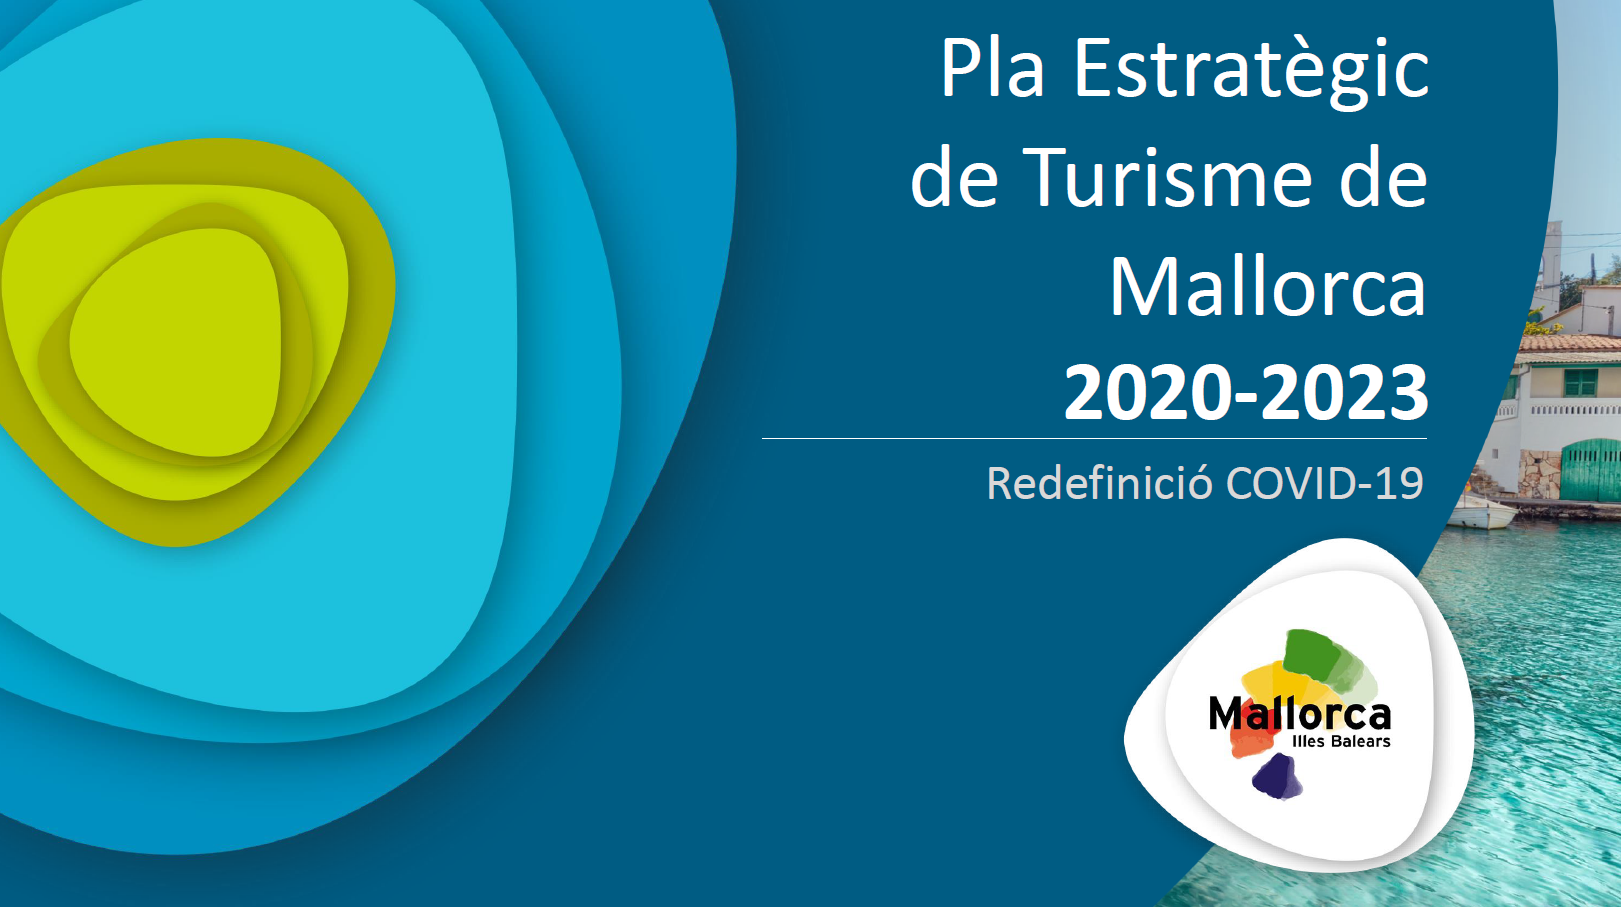 Mallorca ja compta amb un Pla Estratègic de Turisme que la projecta cap a la triple sostenibilitat